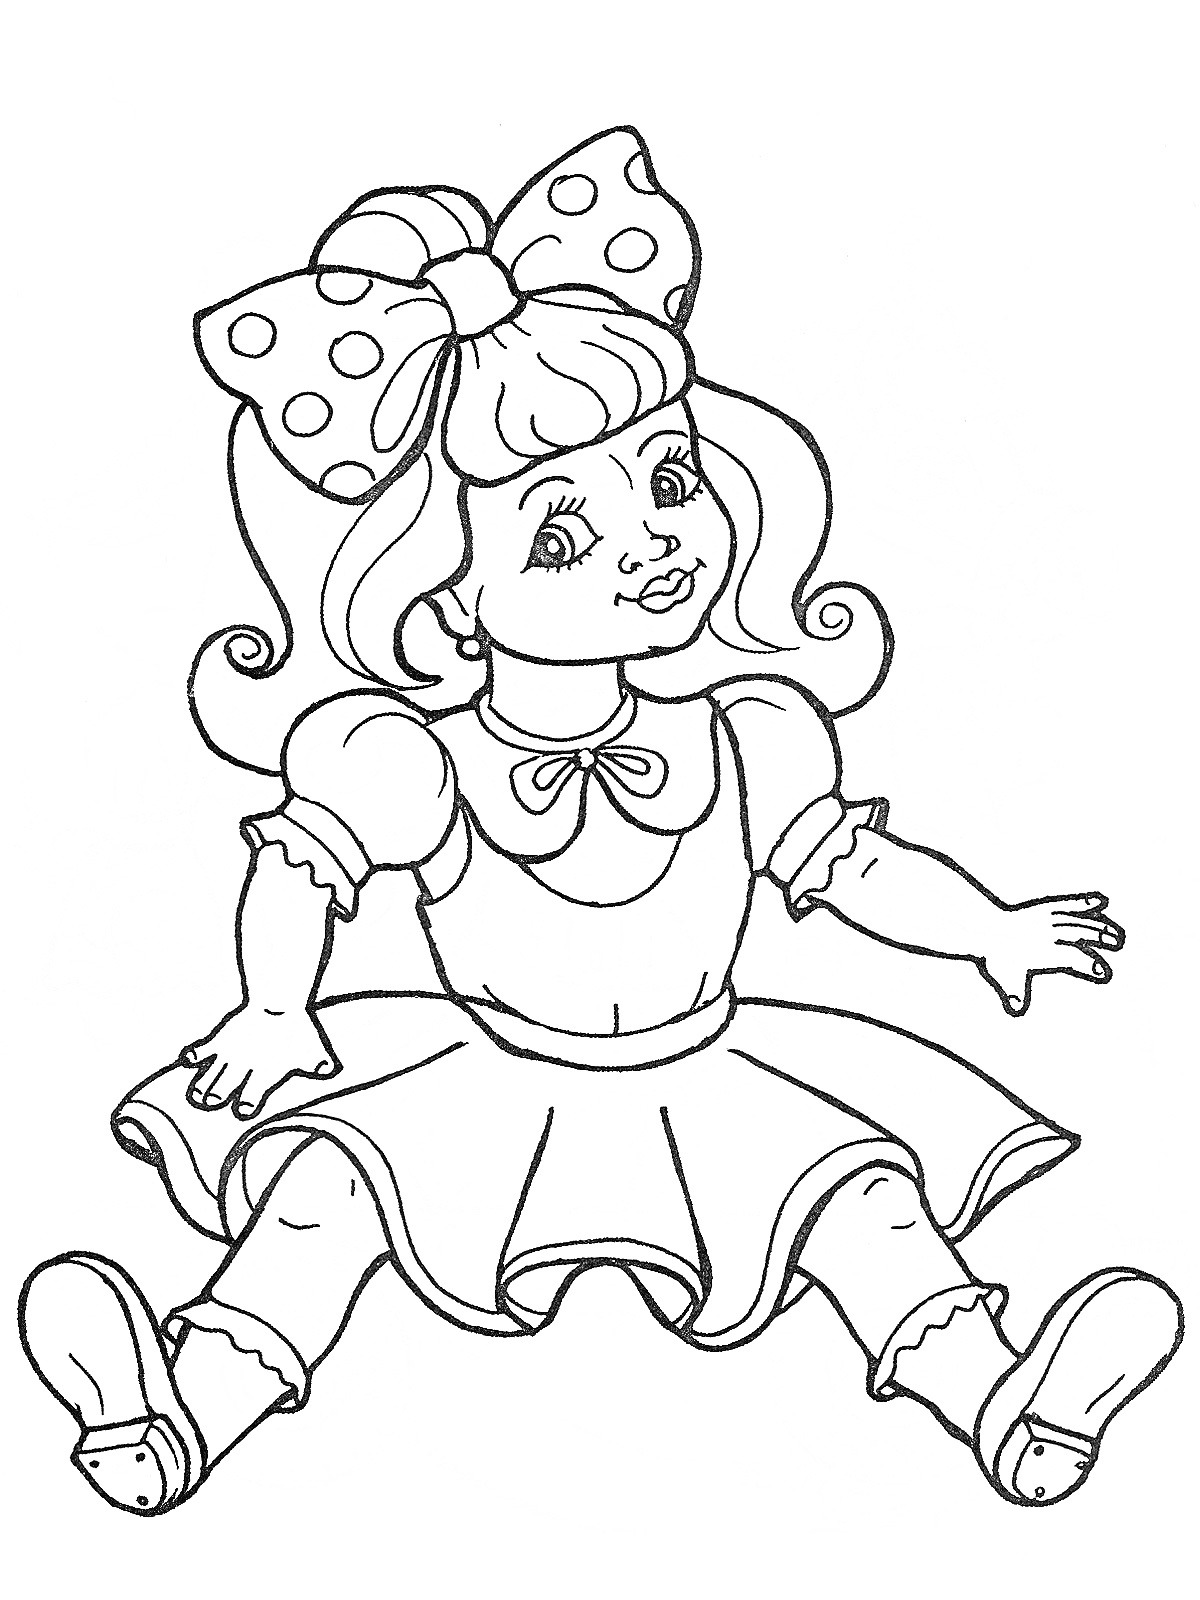 Раскраска Кукла с большим бантом, кудрявыми волосами, платьем с воротничком, пышной юбкой и туфельками